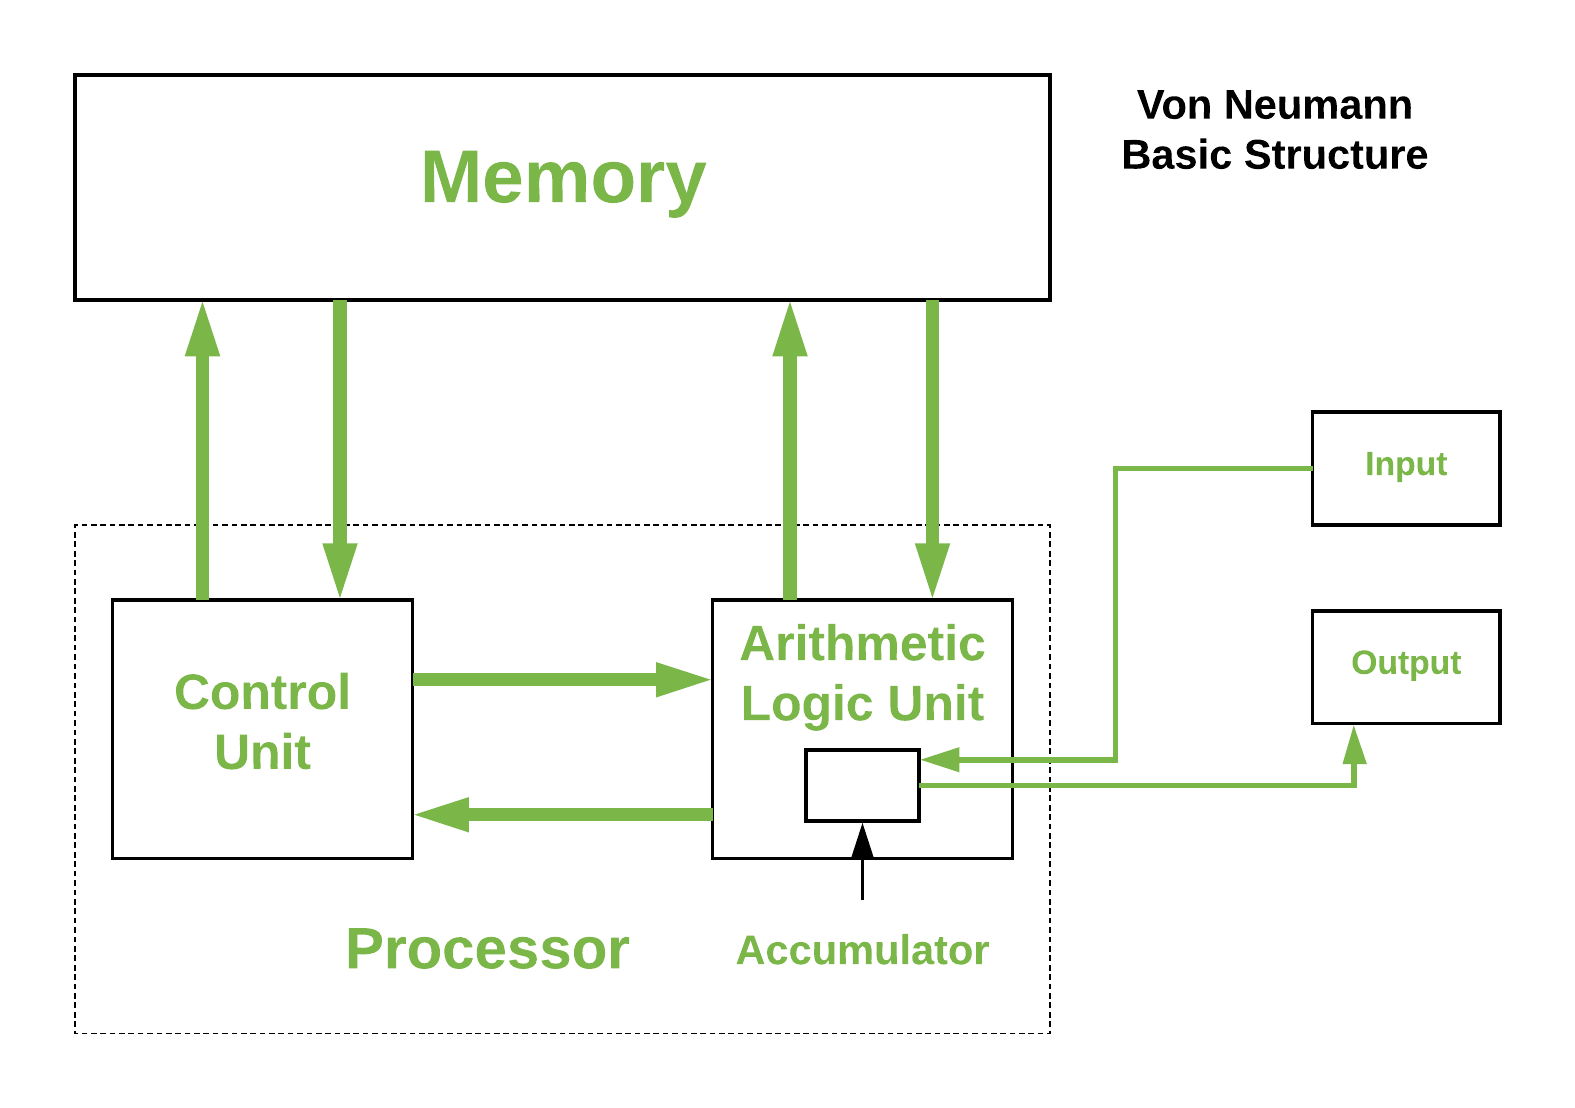 Von-Neumann Architecture